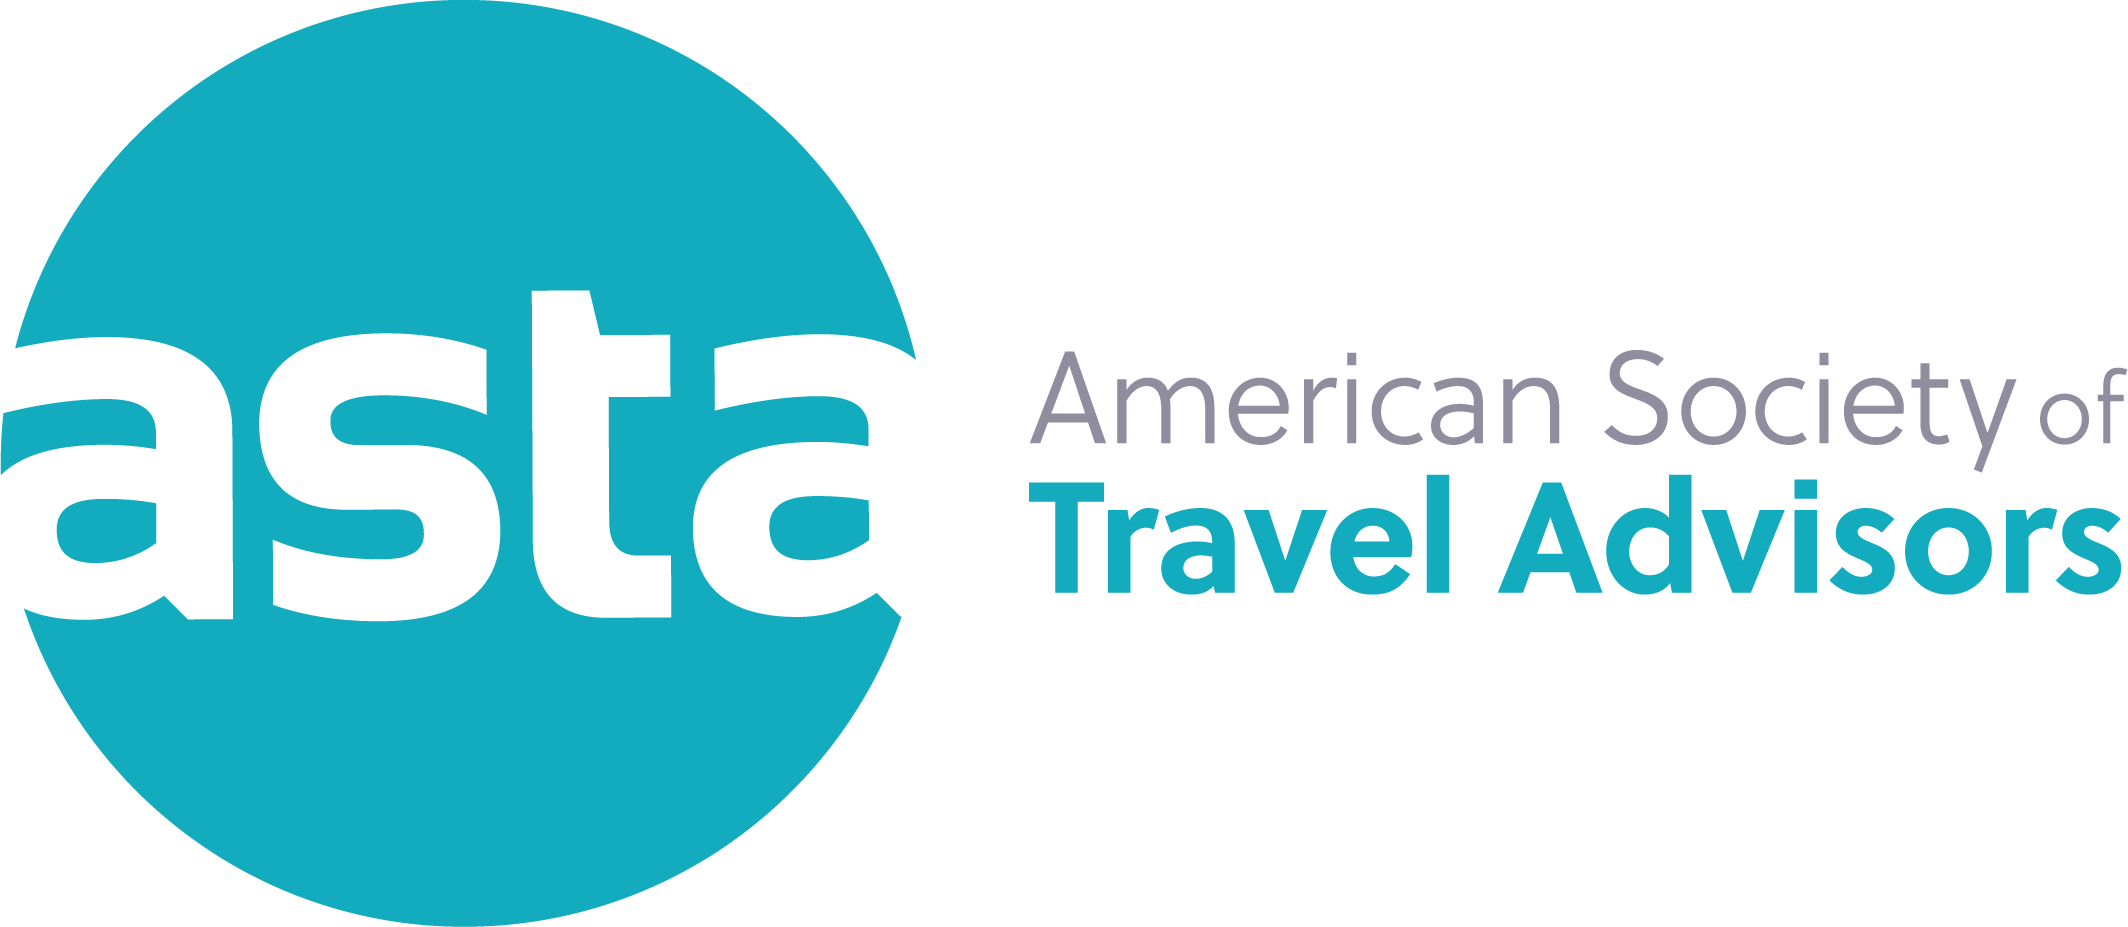 American Society of Travel Advisors member